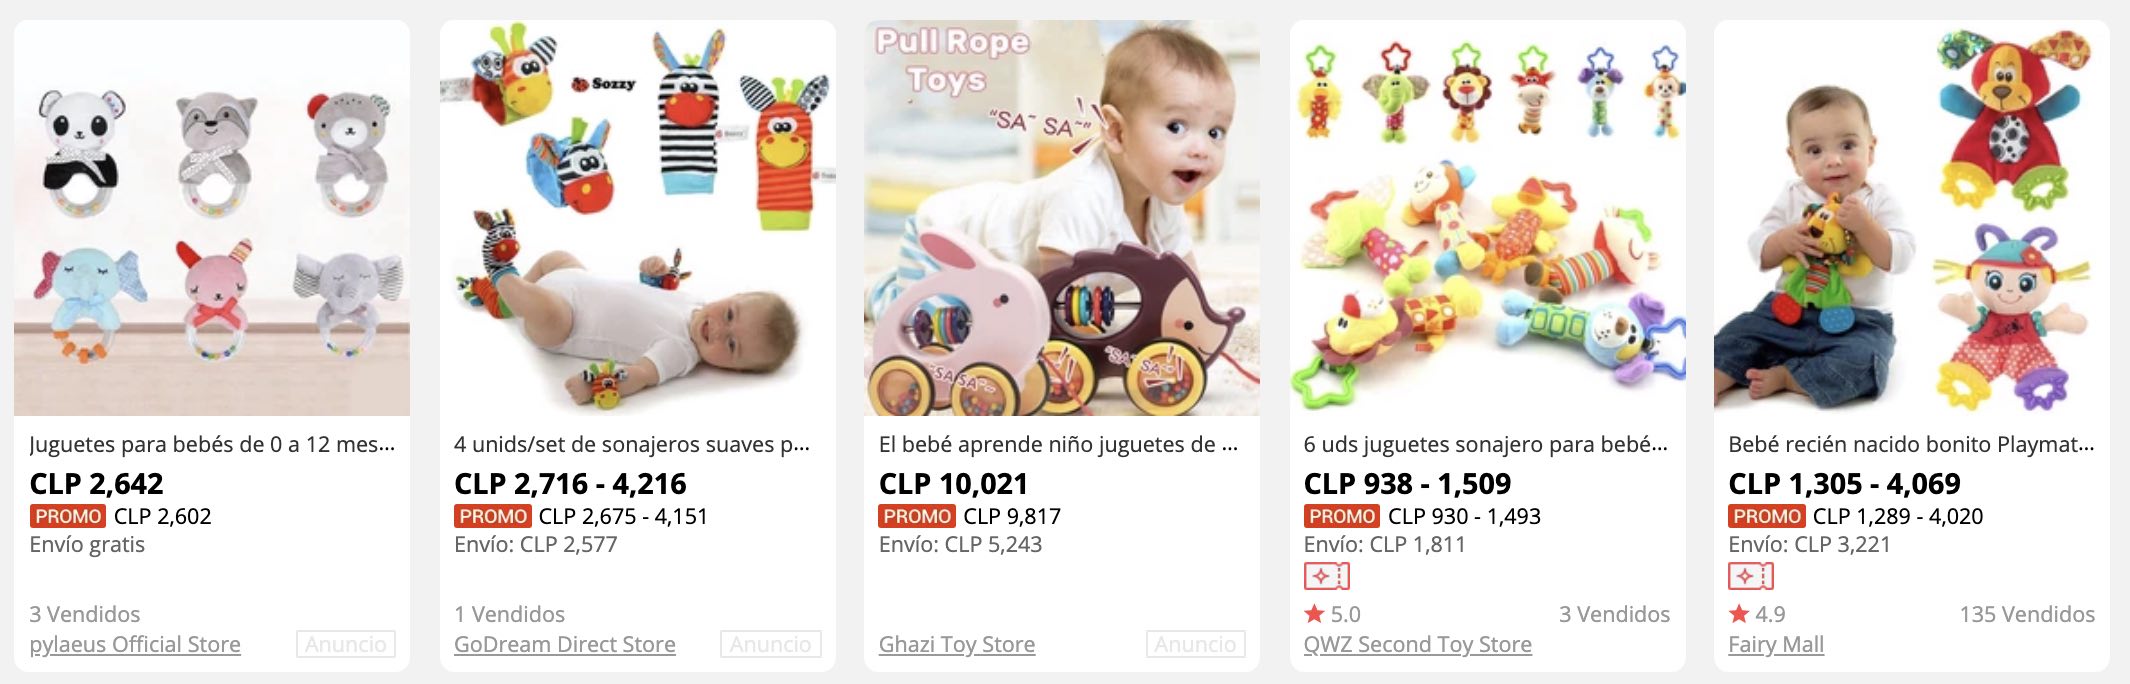 juguetes para bebé en aliexpress